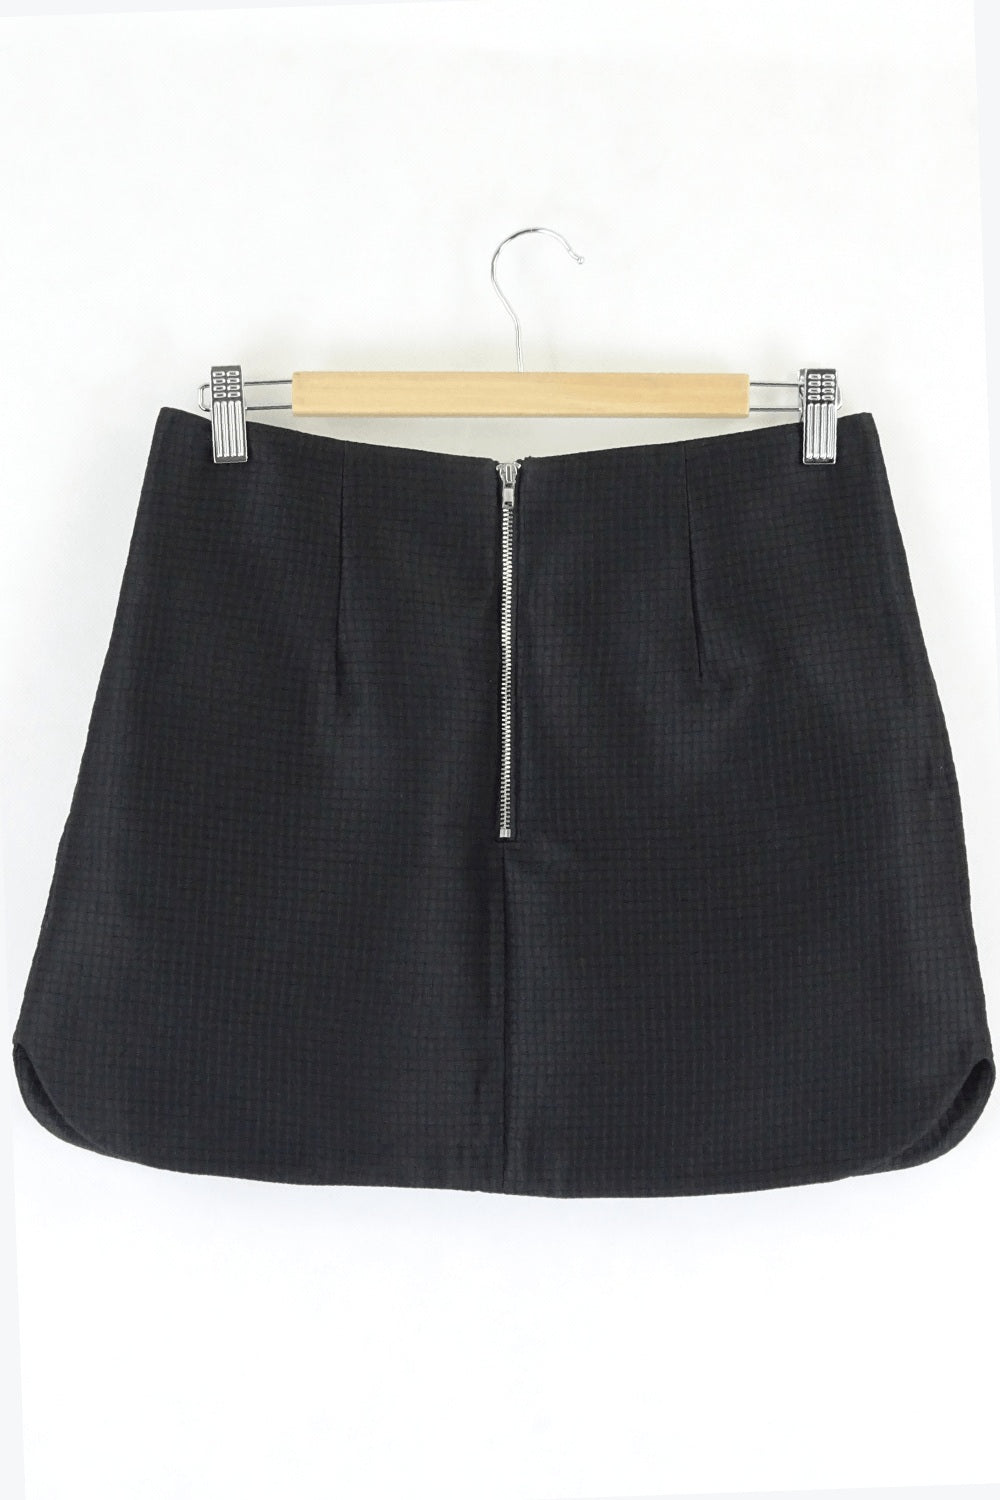 Lulu & Rose Textured Black Mini Skirt S